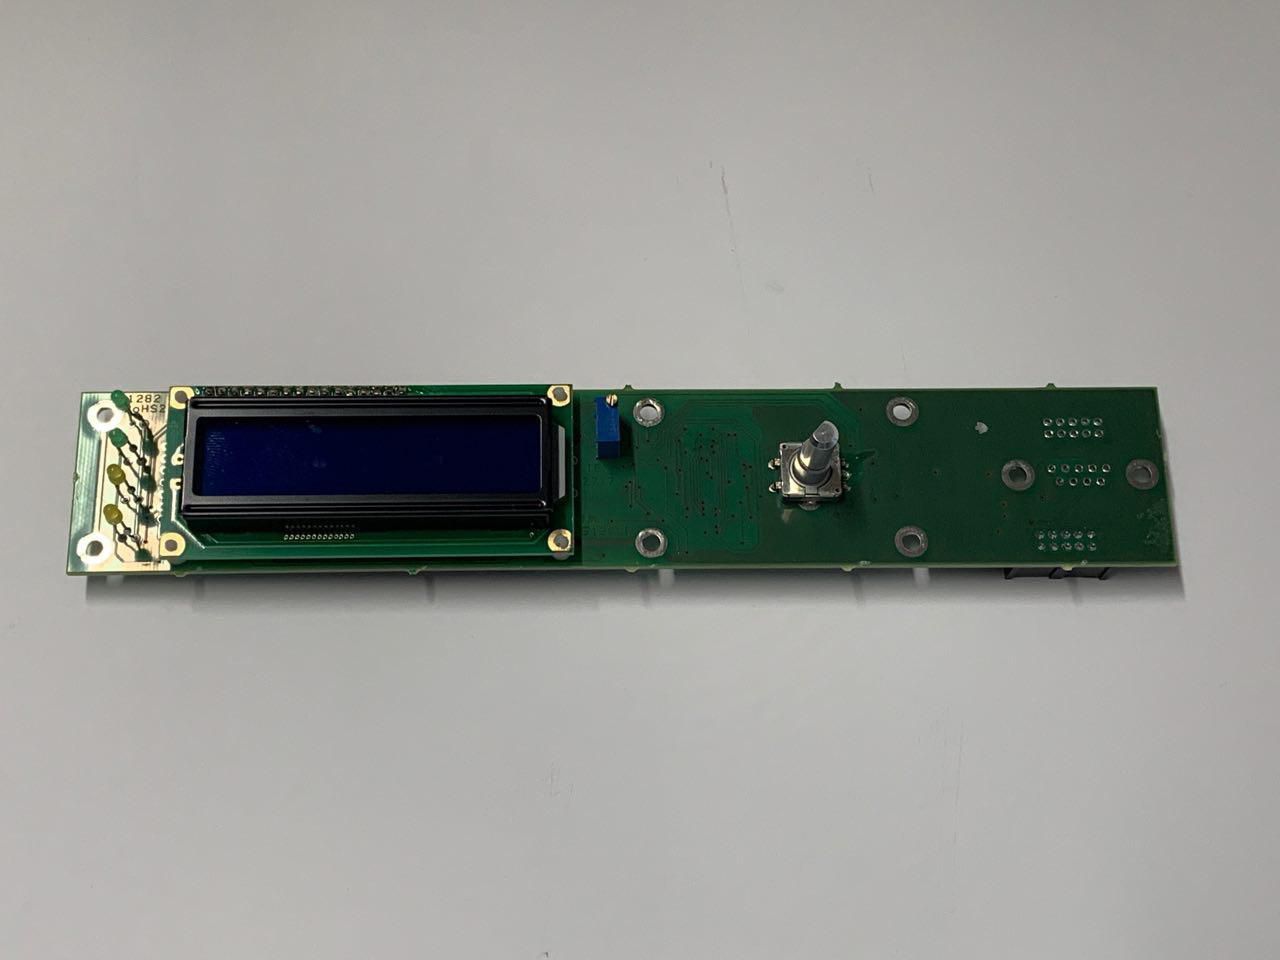 CPU+DISPLAY CARD (SP-PAN037A)